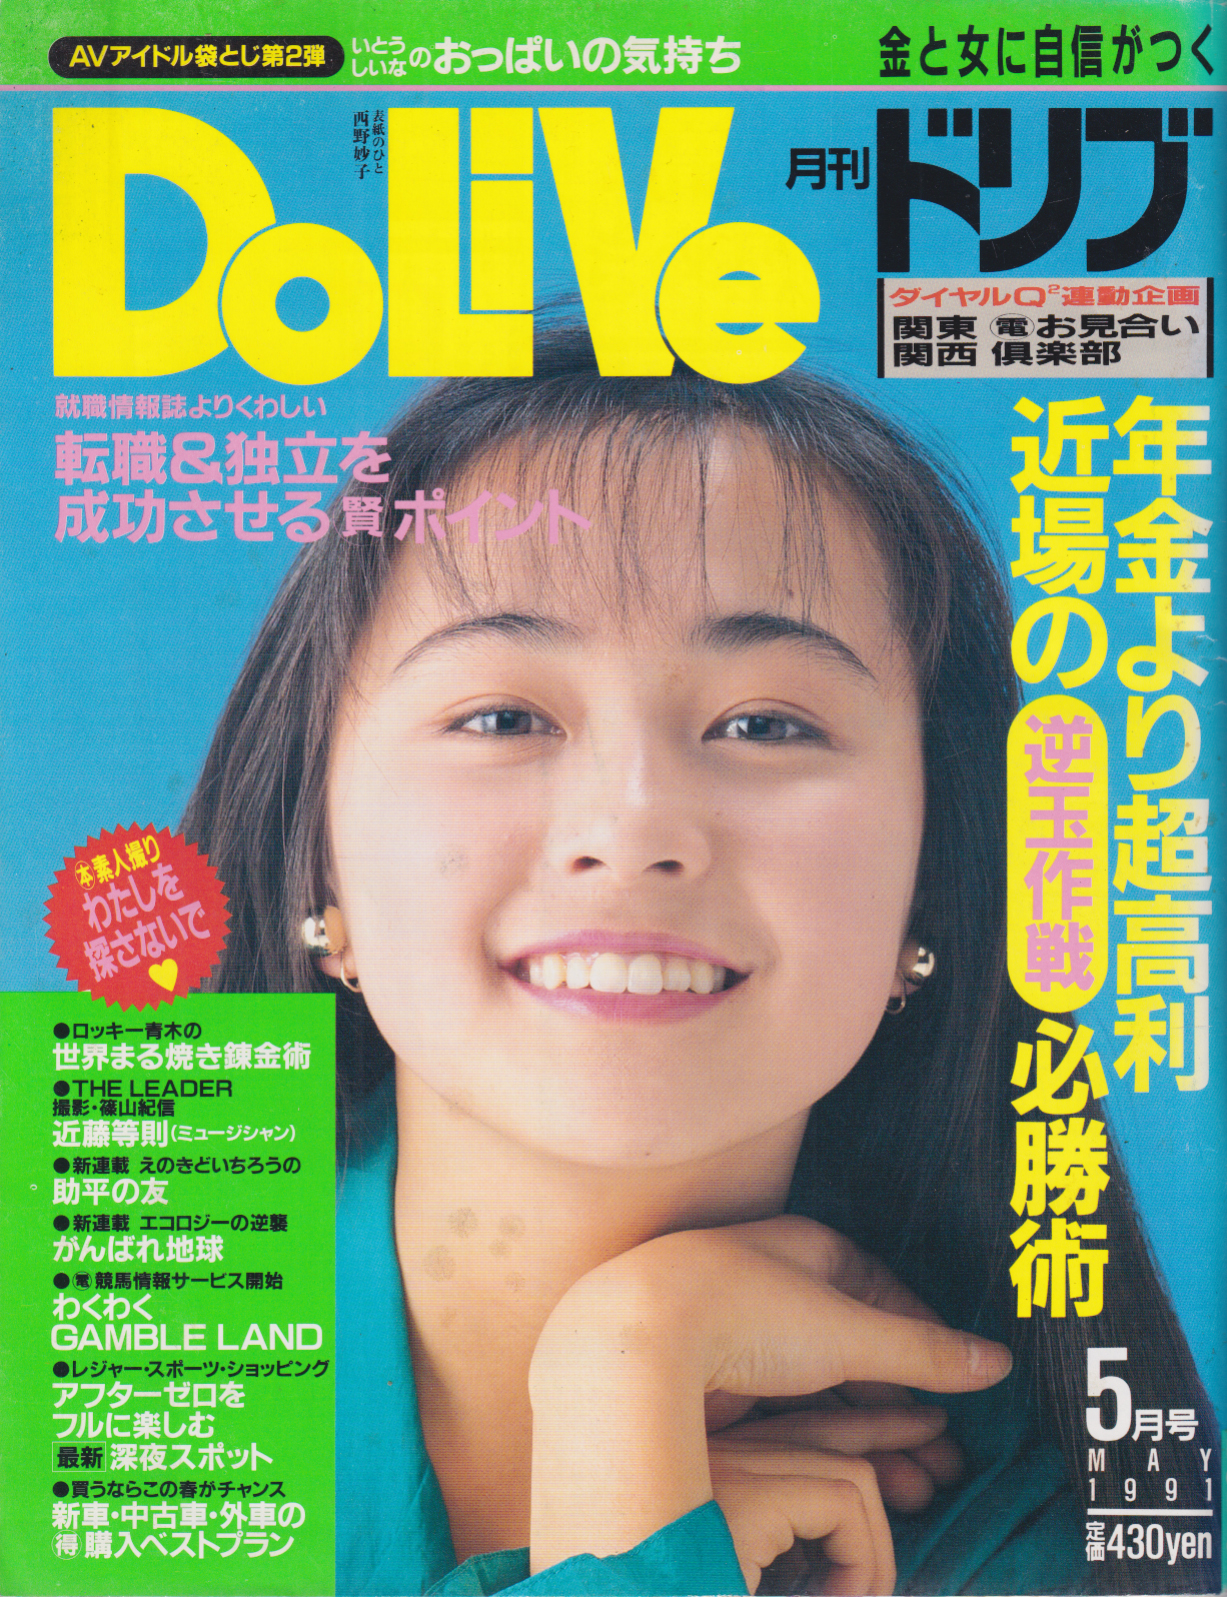  ドリブ/DOLIVE 1991年5月号 雑誌